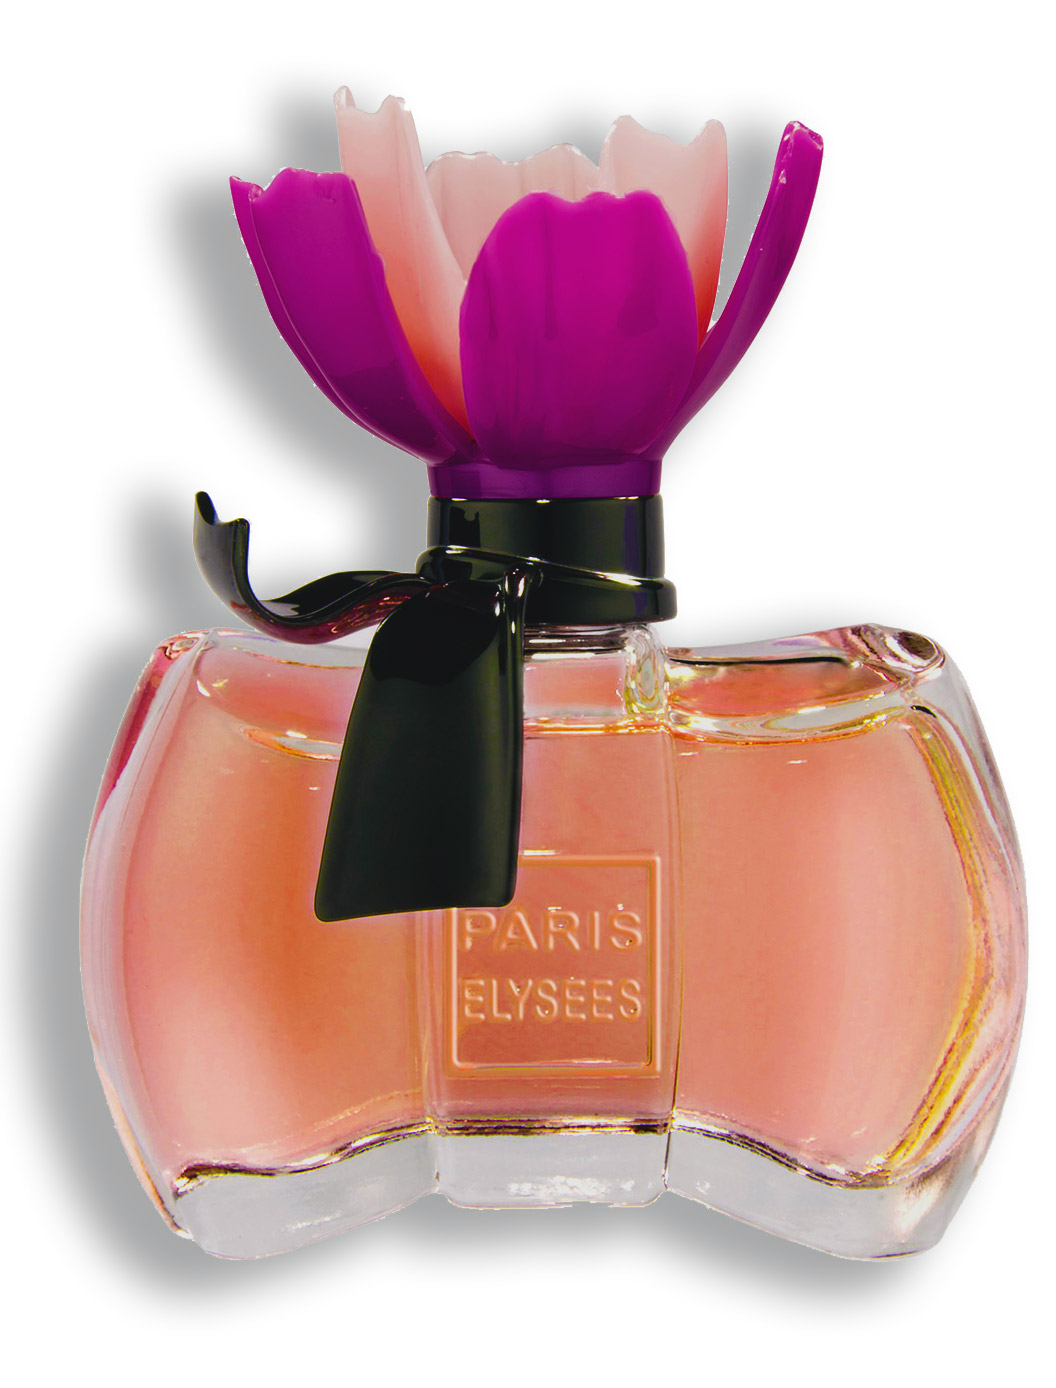 La Petite Fleur Secrete | Paris Elysees Parfums tout La Petite Fleur